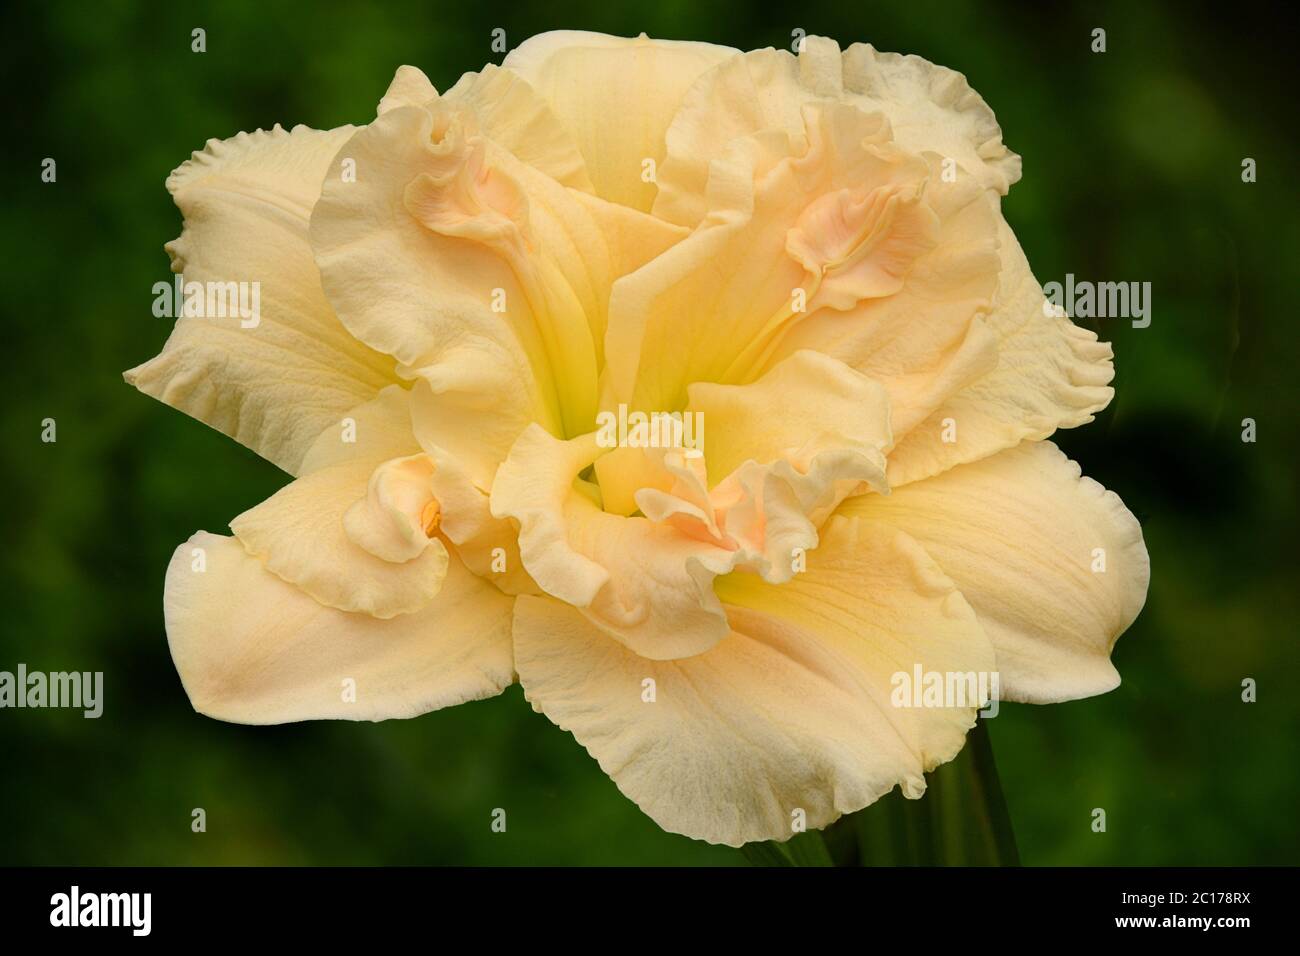 Gros plan de magnifiques fleurs de jaune crème et de rose pâle avec pétales à volants et gorge vert lime (Hemerocallis Schnicke Fritz). Banque D'Images